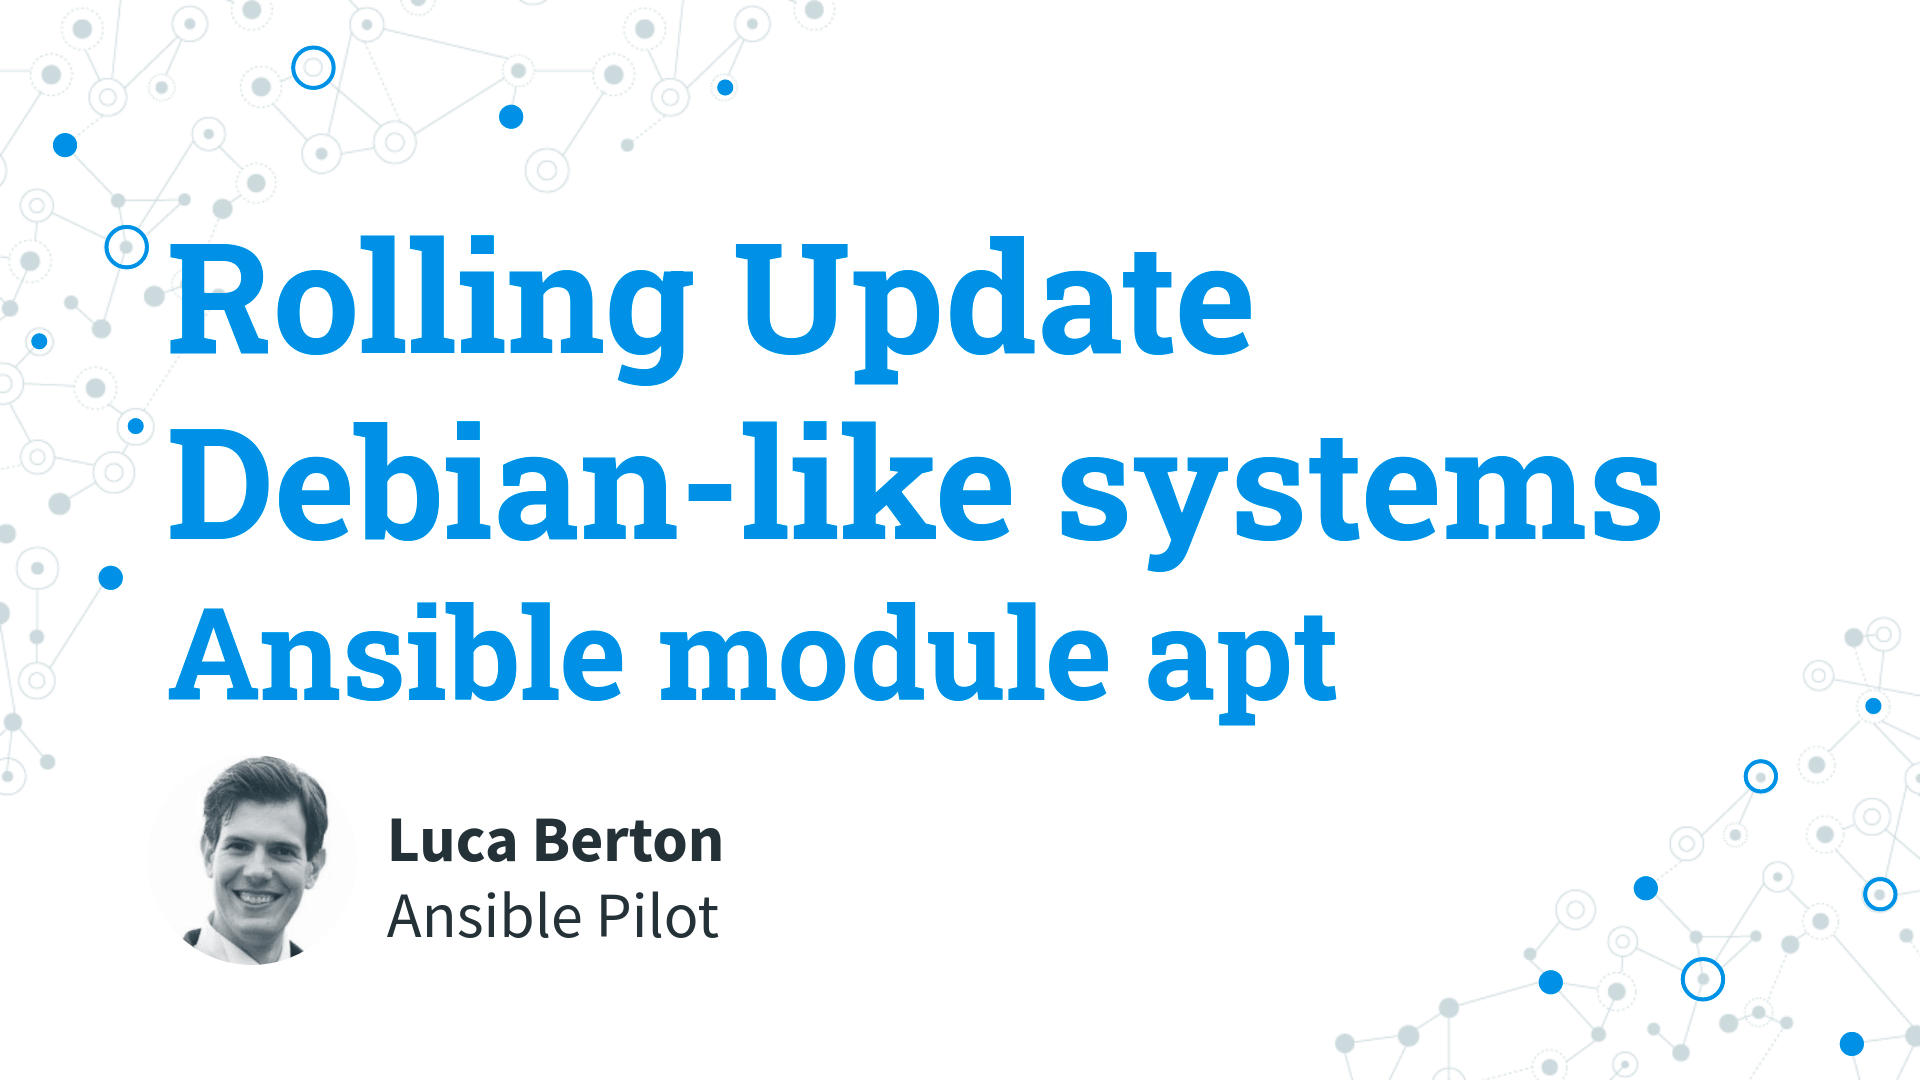 Rolling Update Debian-like systems - Ansible module apt